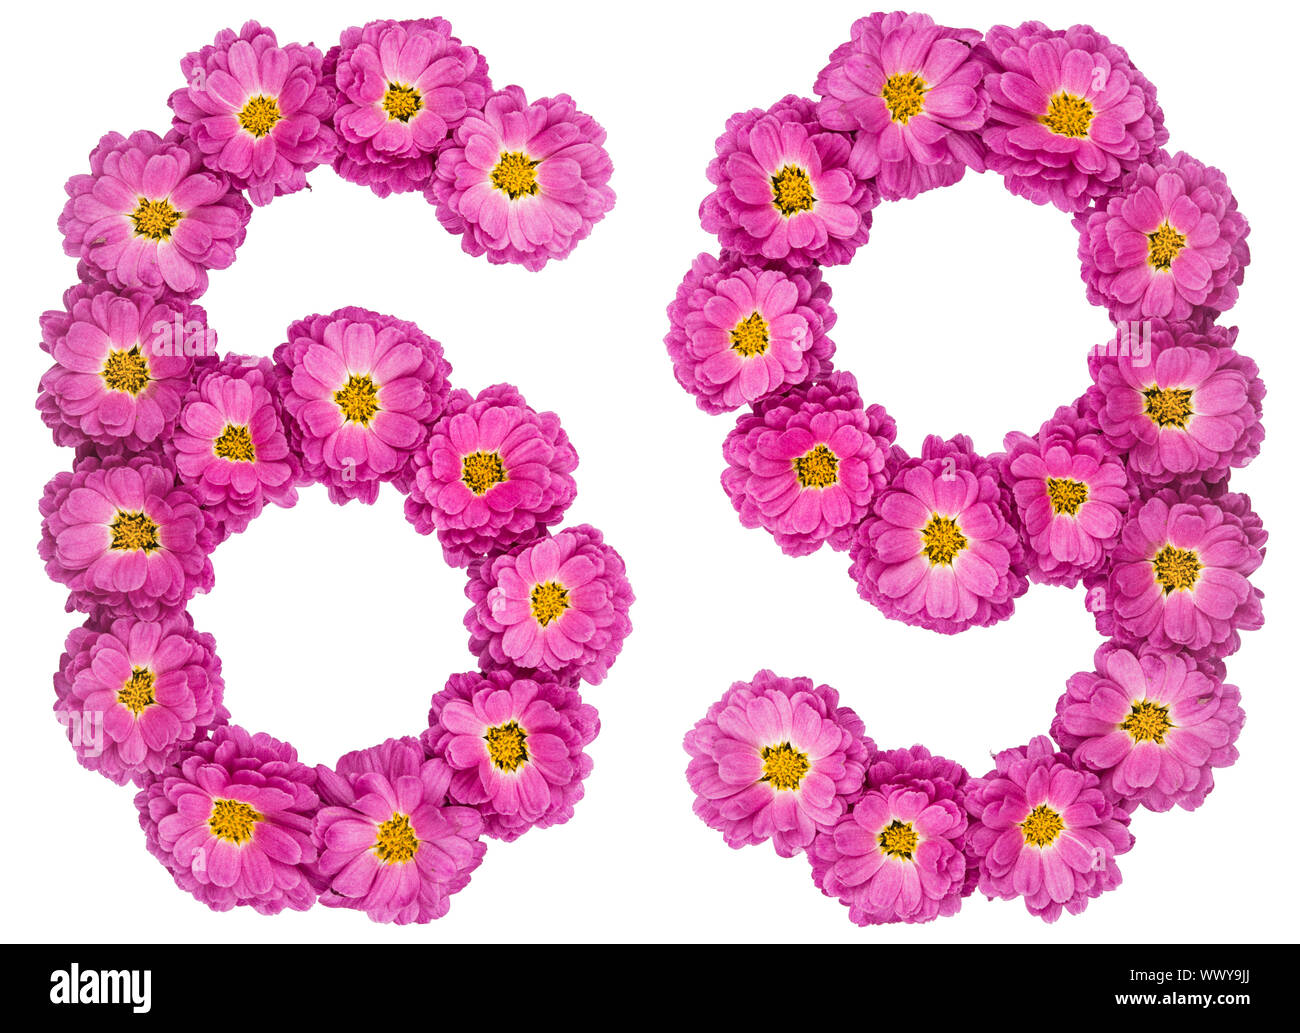 Chiffre arabe 69, soixante-neuf, des fleurs de chrysanthème, isolé sur fond blanc Banque D'Images